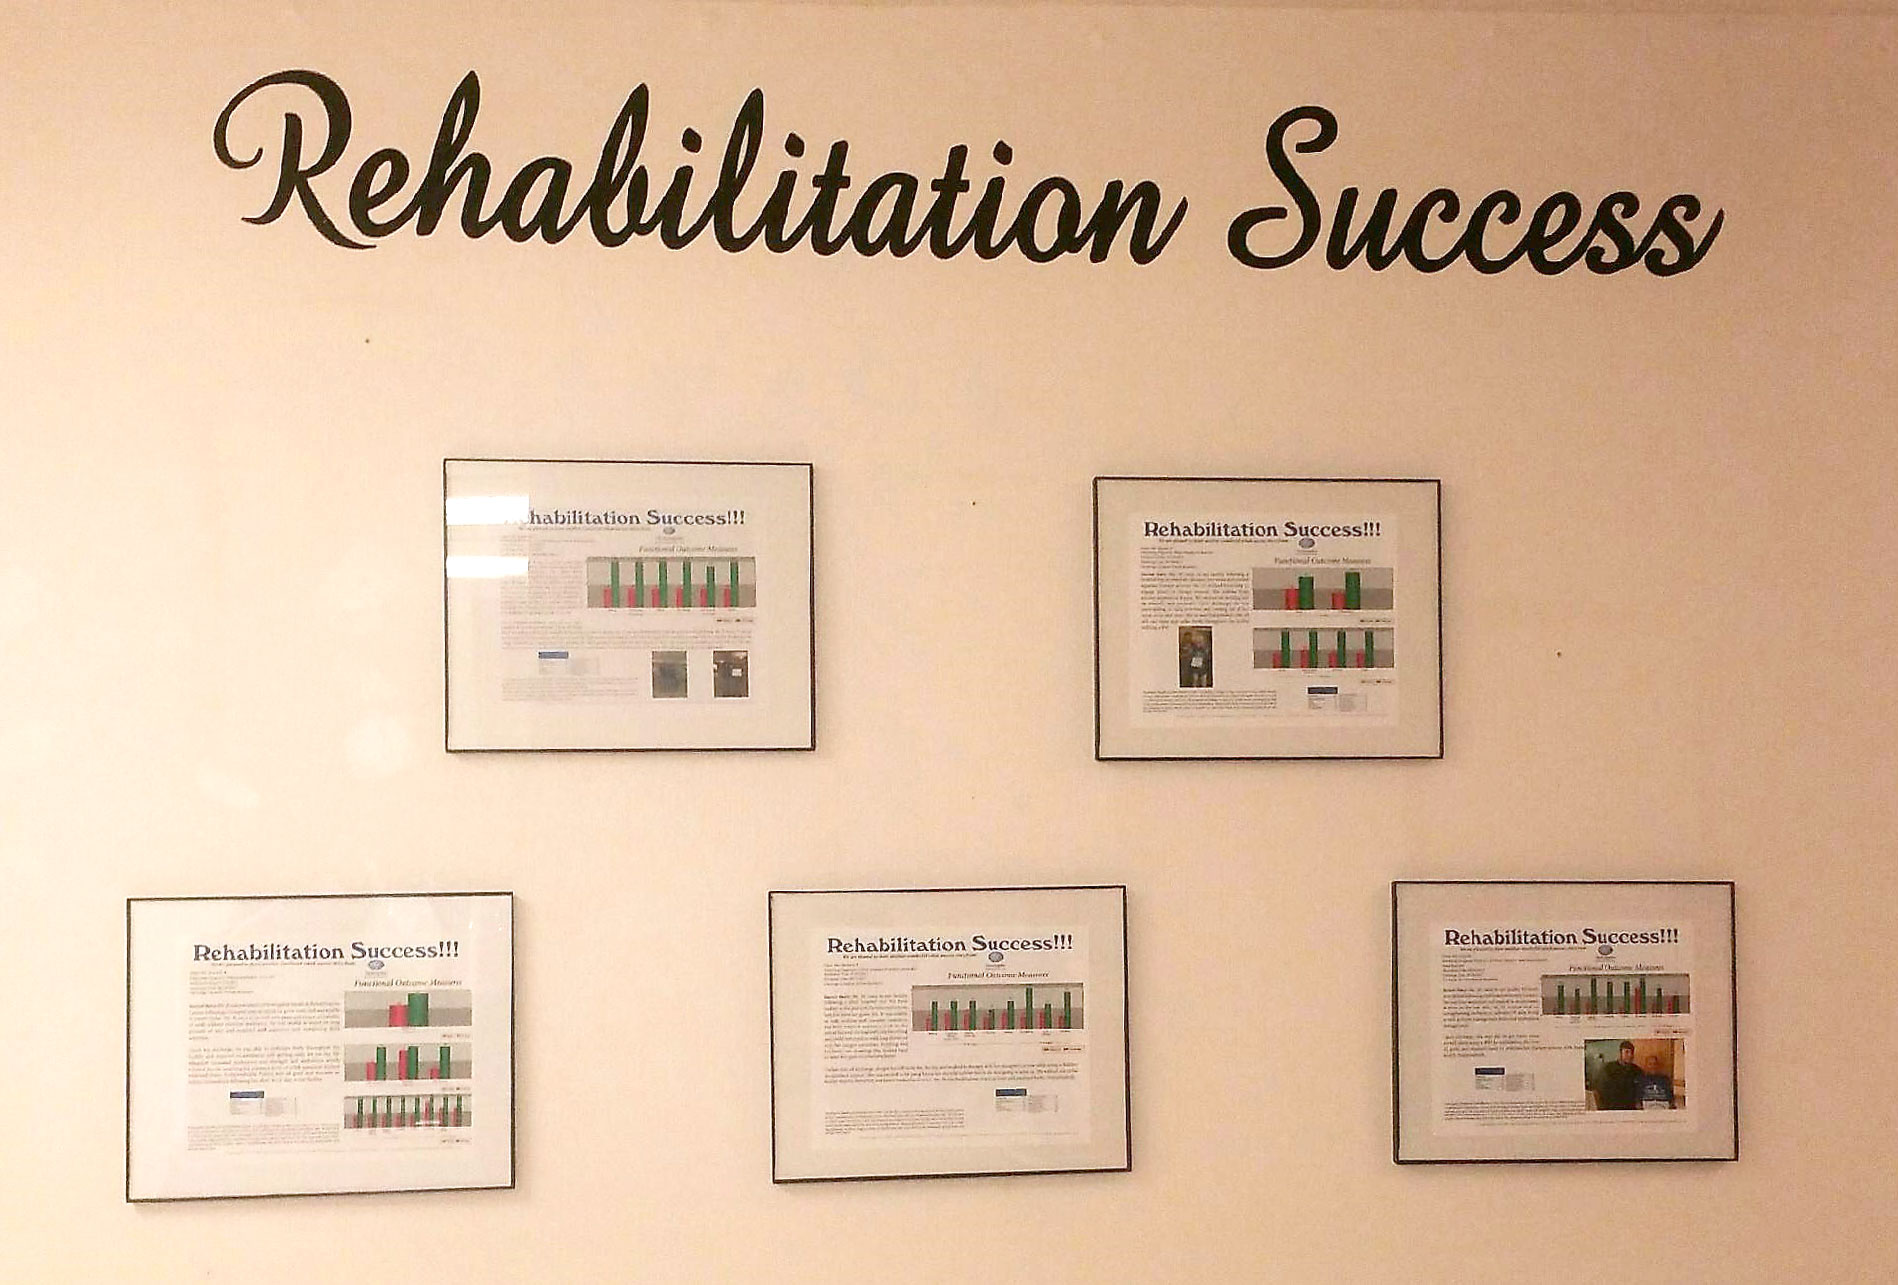 Rehab-Wall-of-Fame-Huntingdon-Health-&-Rehab-Dec-2017